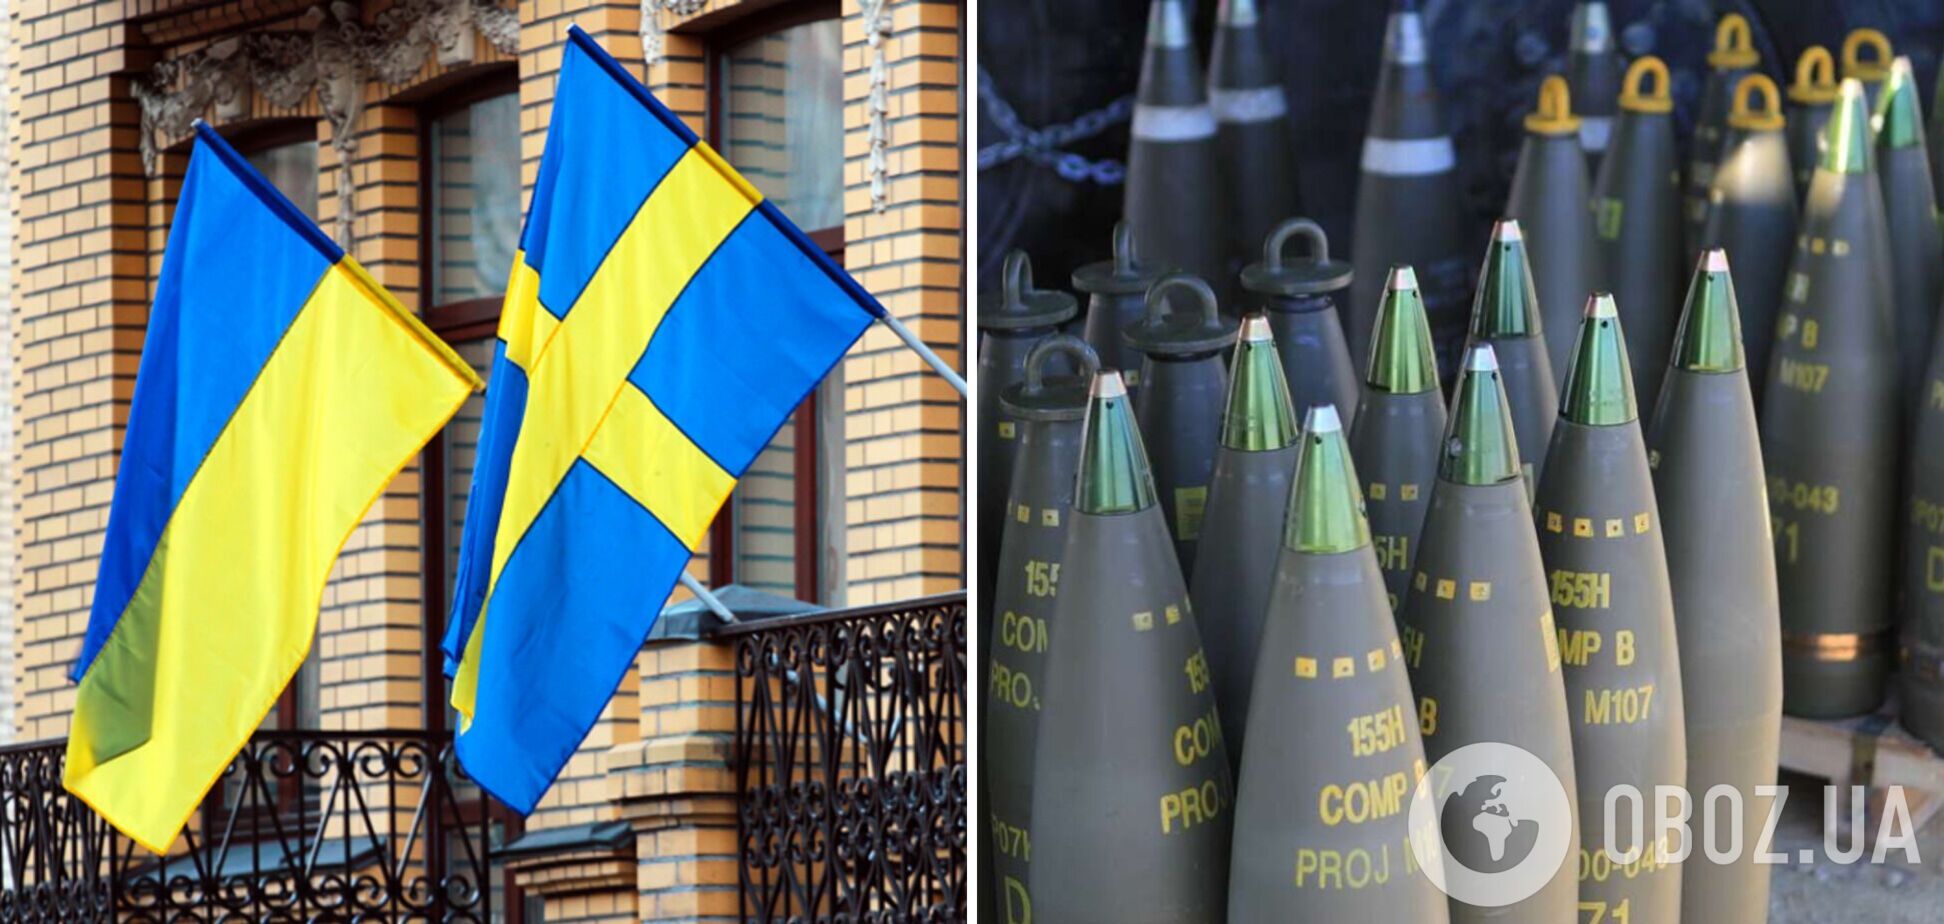 Швеция планирует увеличить производство 155 мм боеприпасов для Украины: что известно